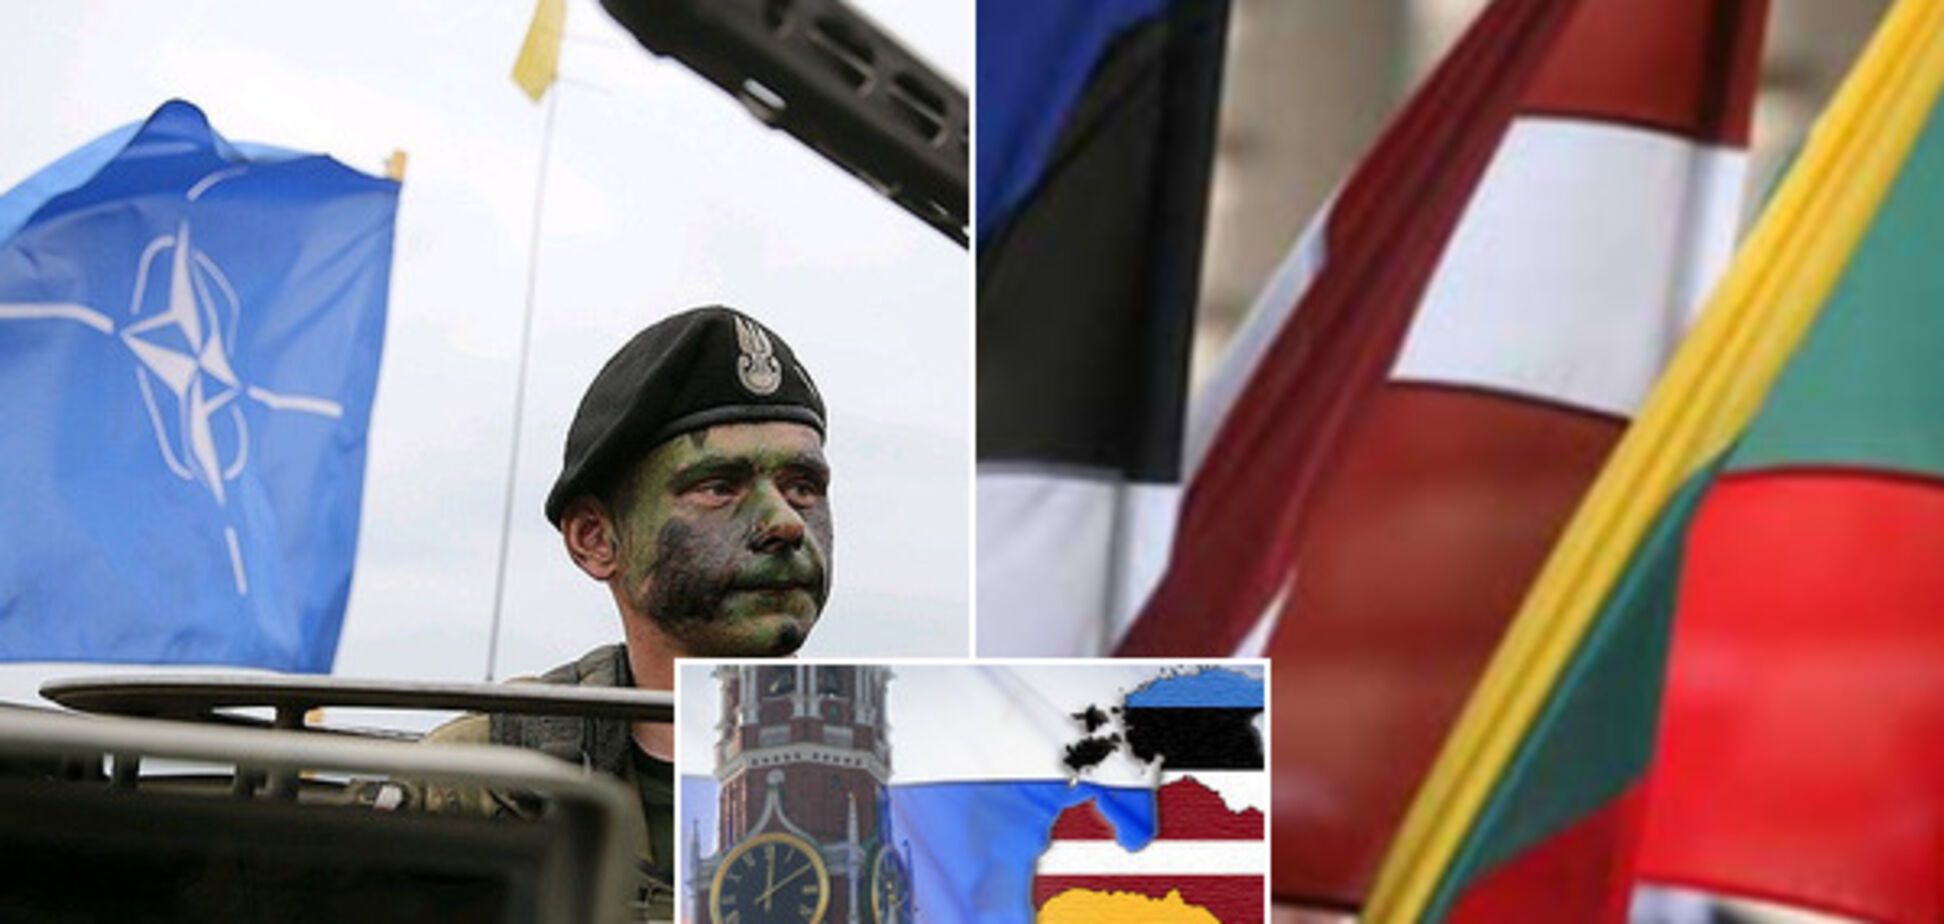 НАТО не допоможе: ветеран АТО пояснив загрозу РФ для прибалтів